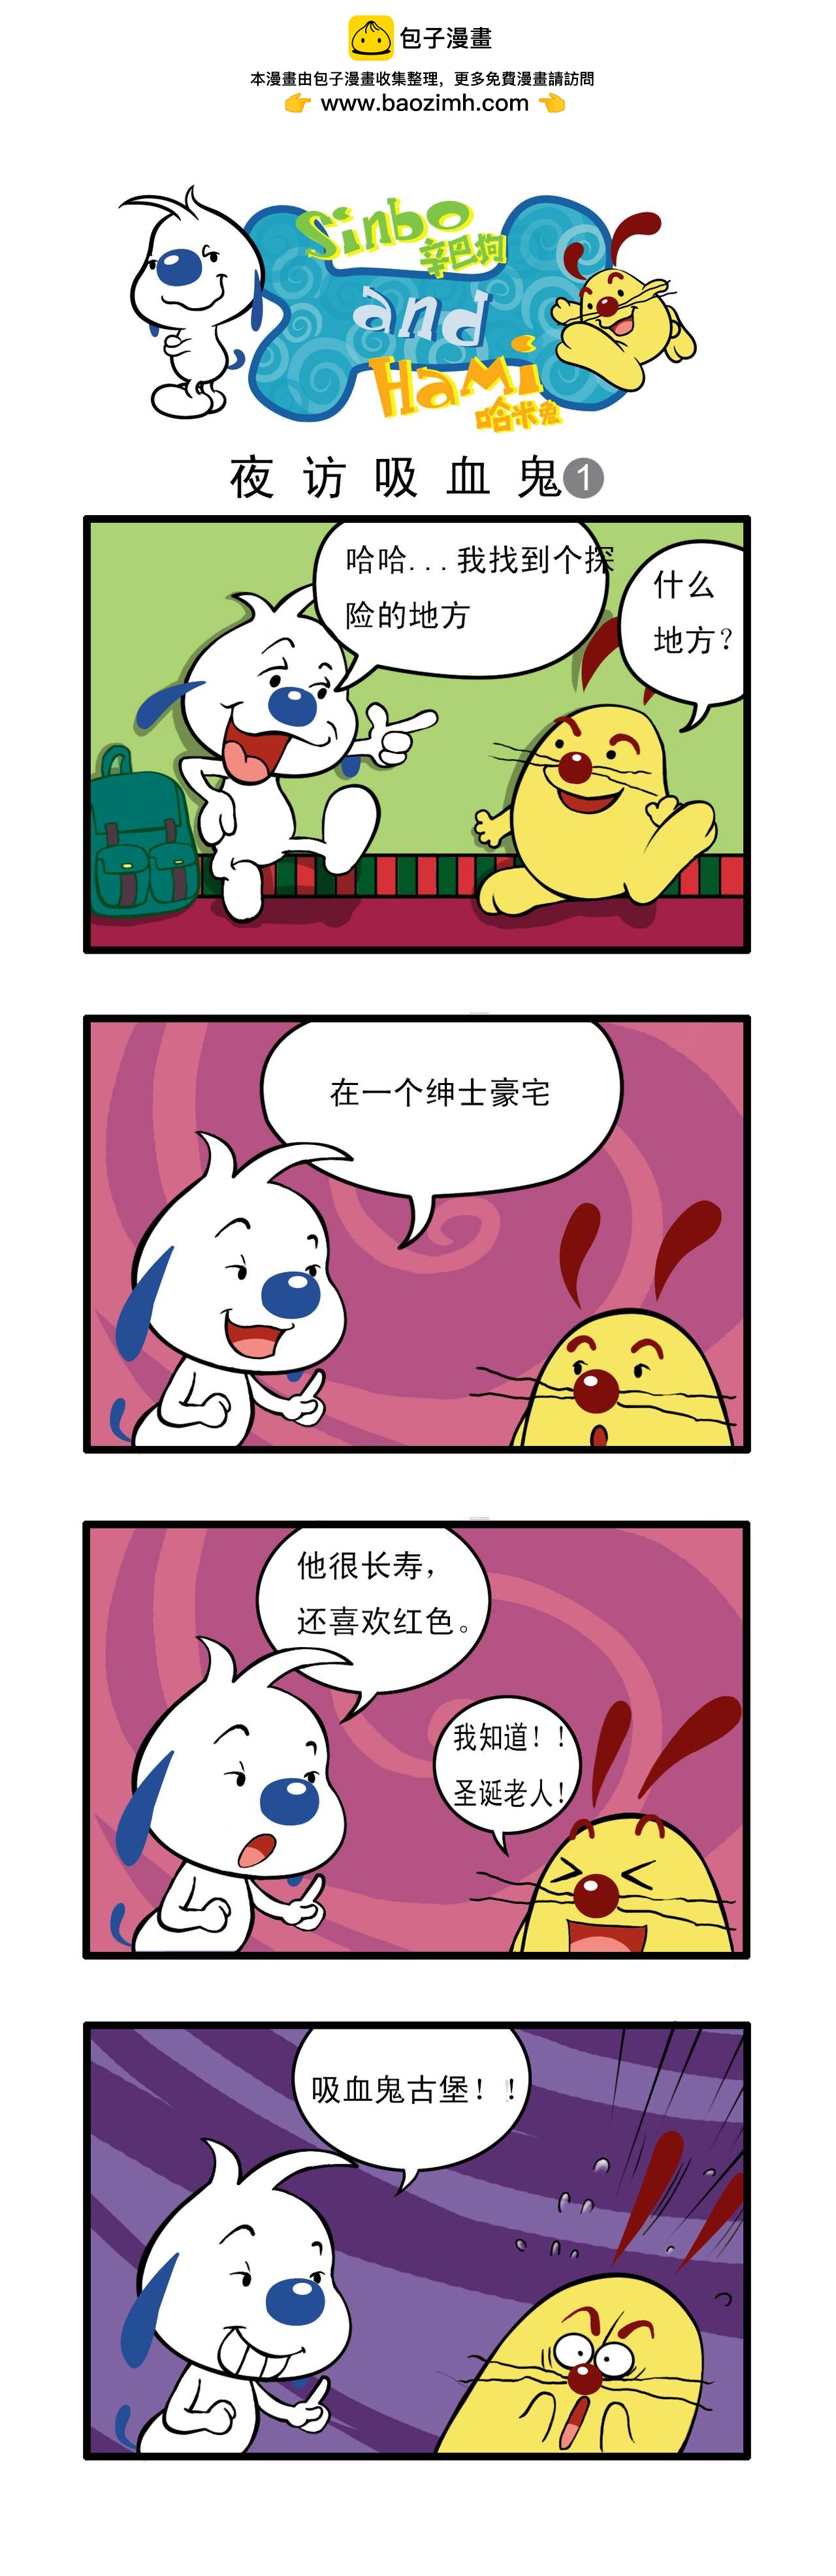 辛巴狗日常漫畫 - 多格14 - 1